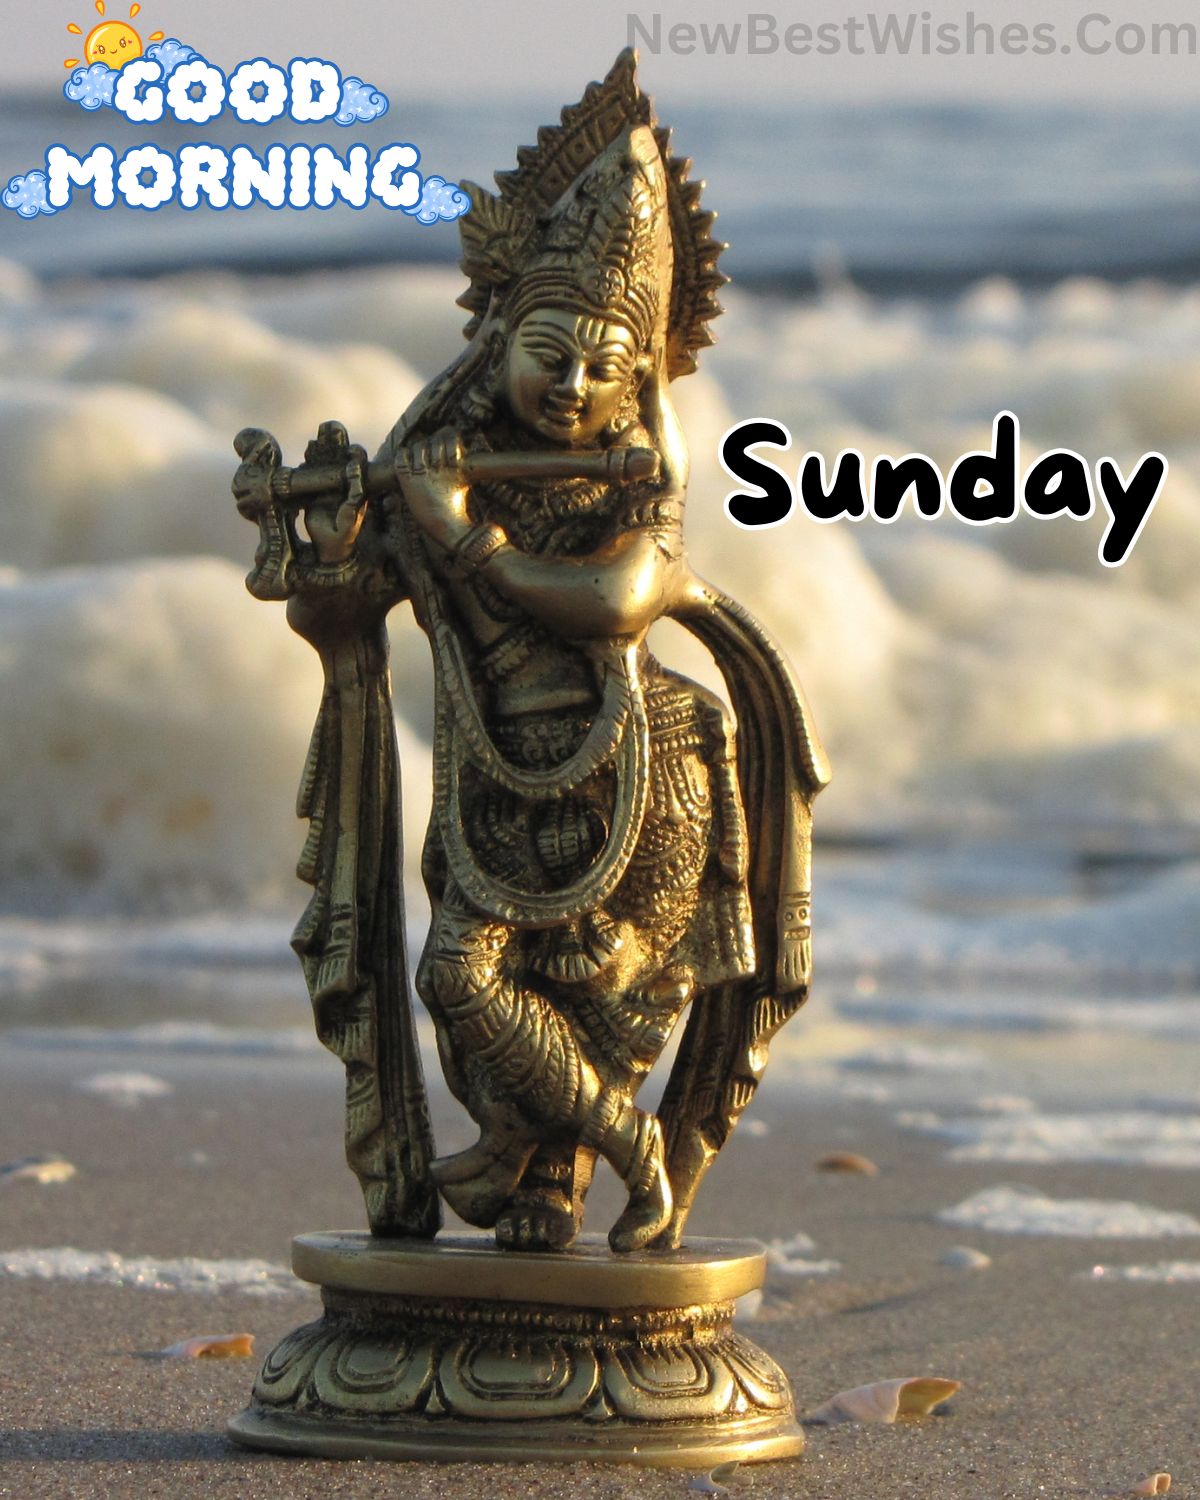 Sunday good morning wishes with god images 12